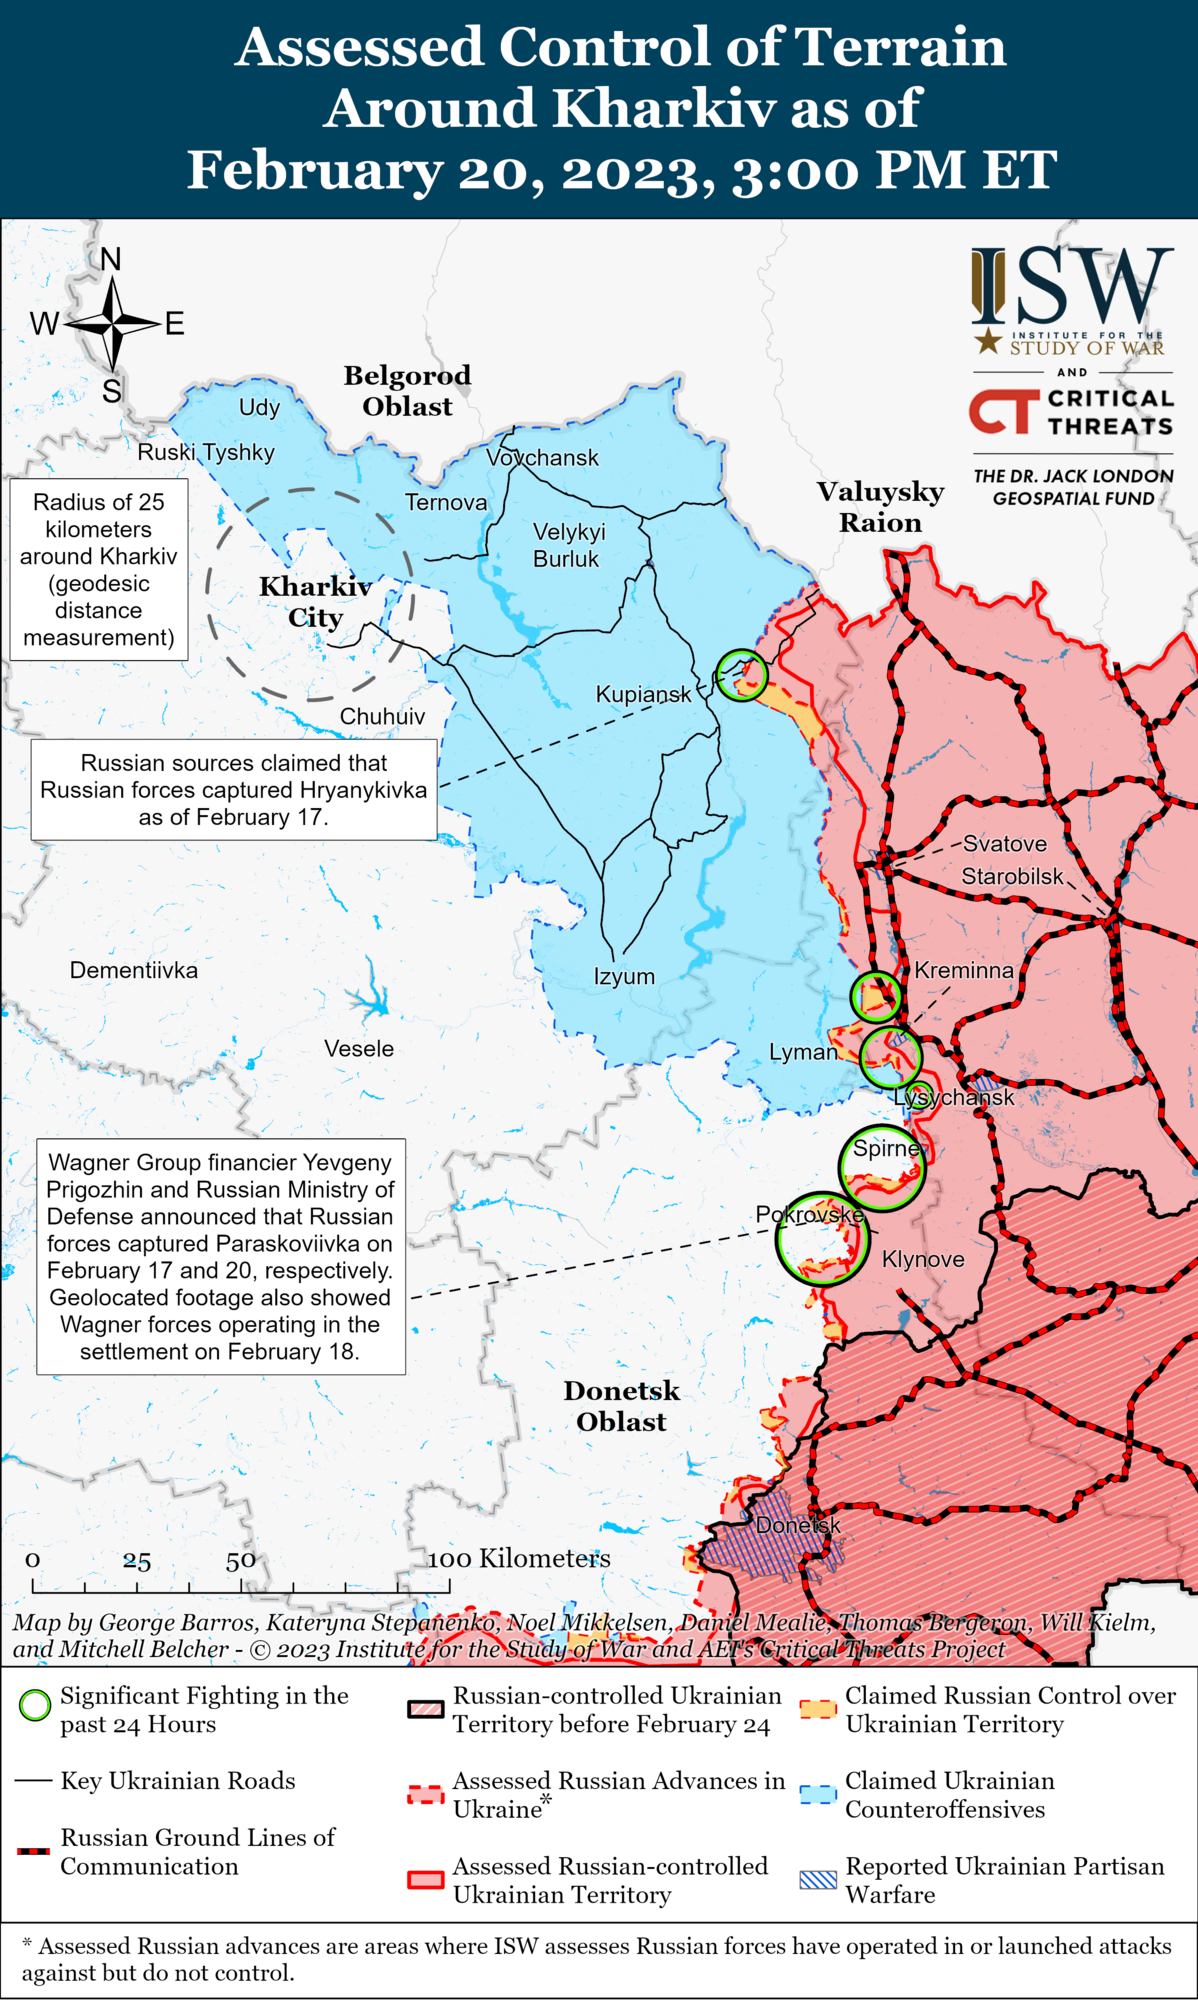 Росії бракує сил на фронті, Україна може захопити ініціативу: в ISW дали прогноз щодо ходу війни в 2023 році